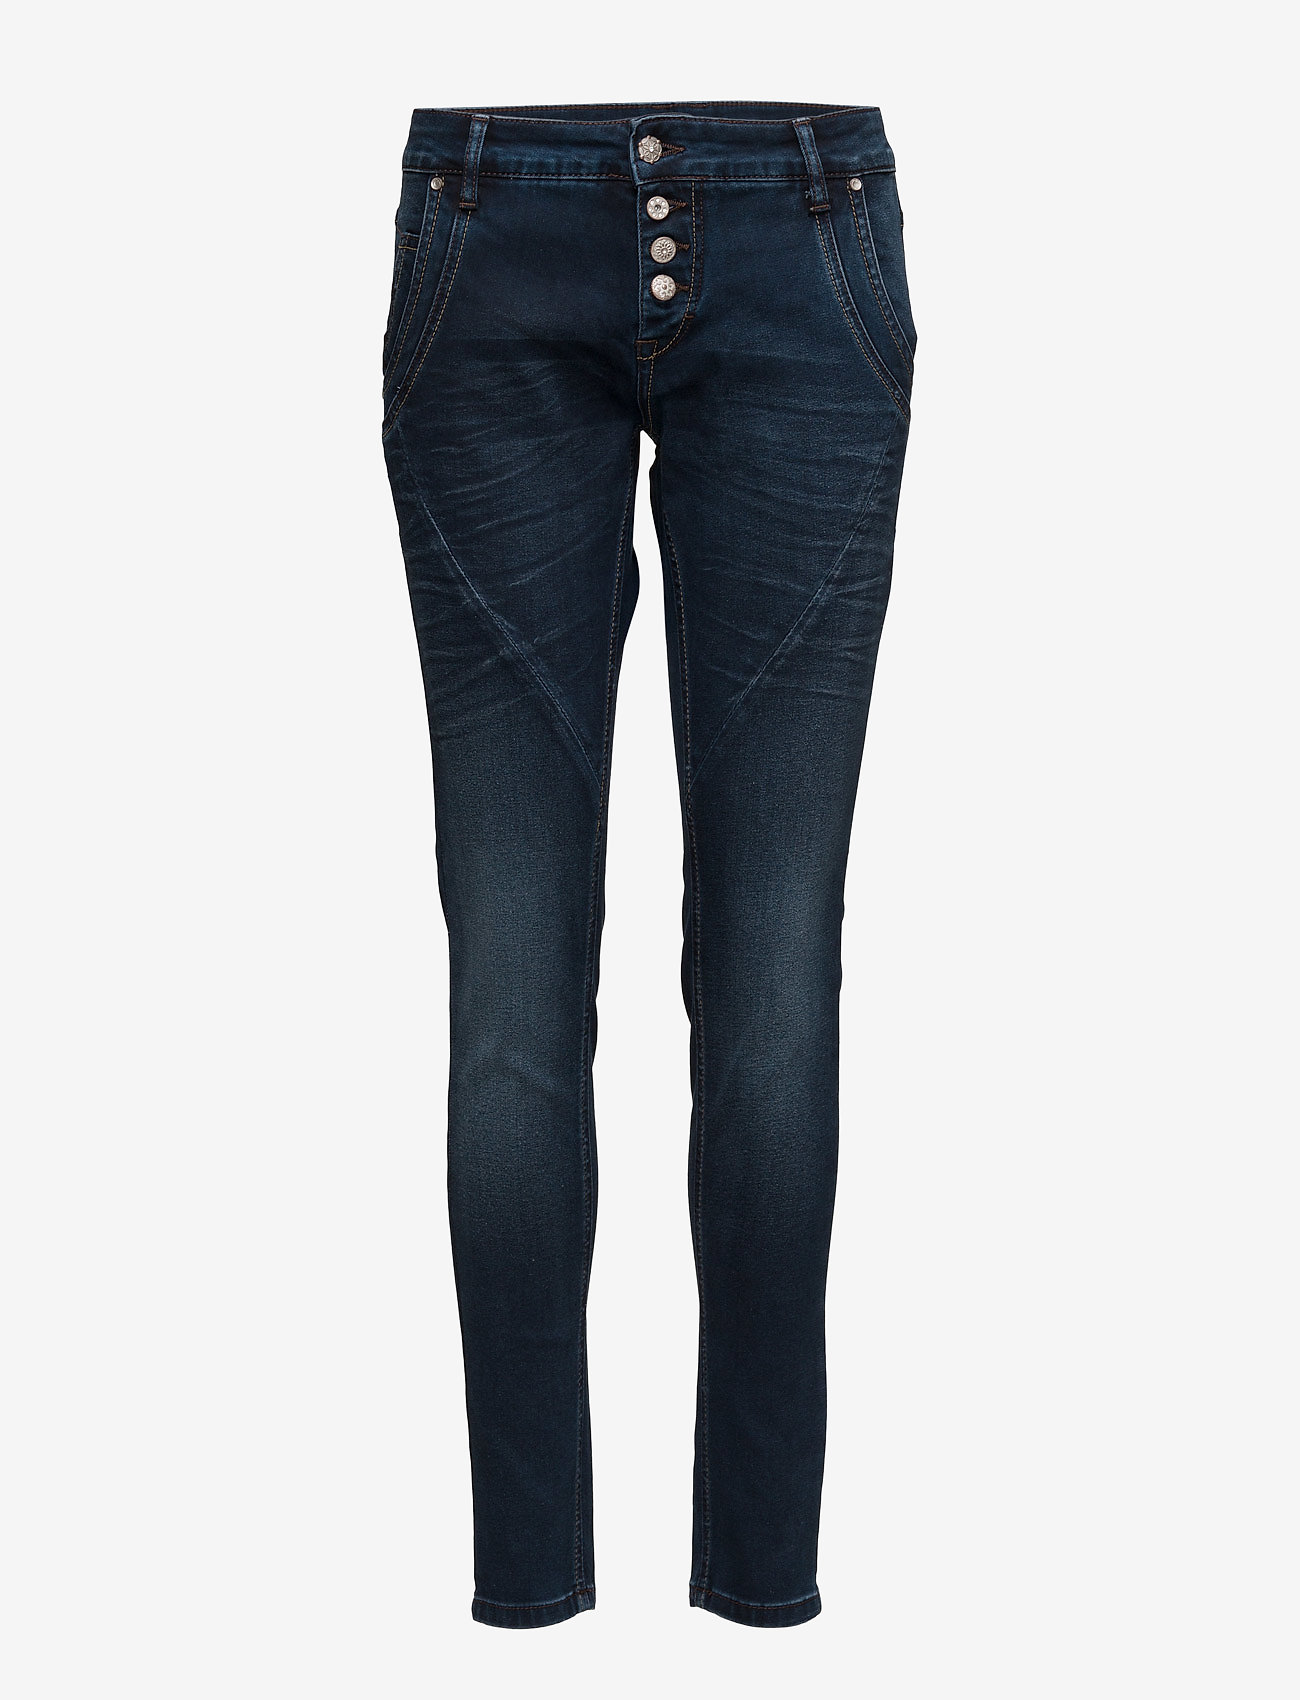 Cream Baiily Power Stretch Jeans (Dark Blue 215.99 kr | Stort af designer mærker | Booztlet.com